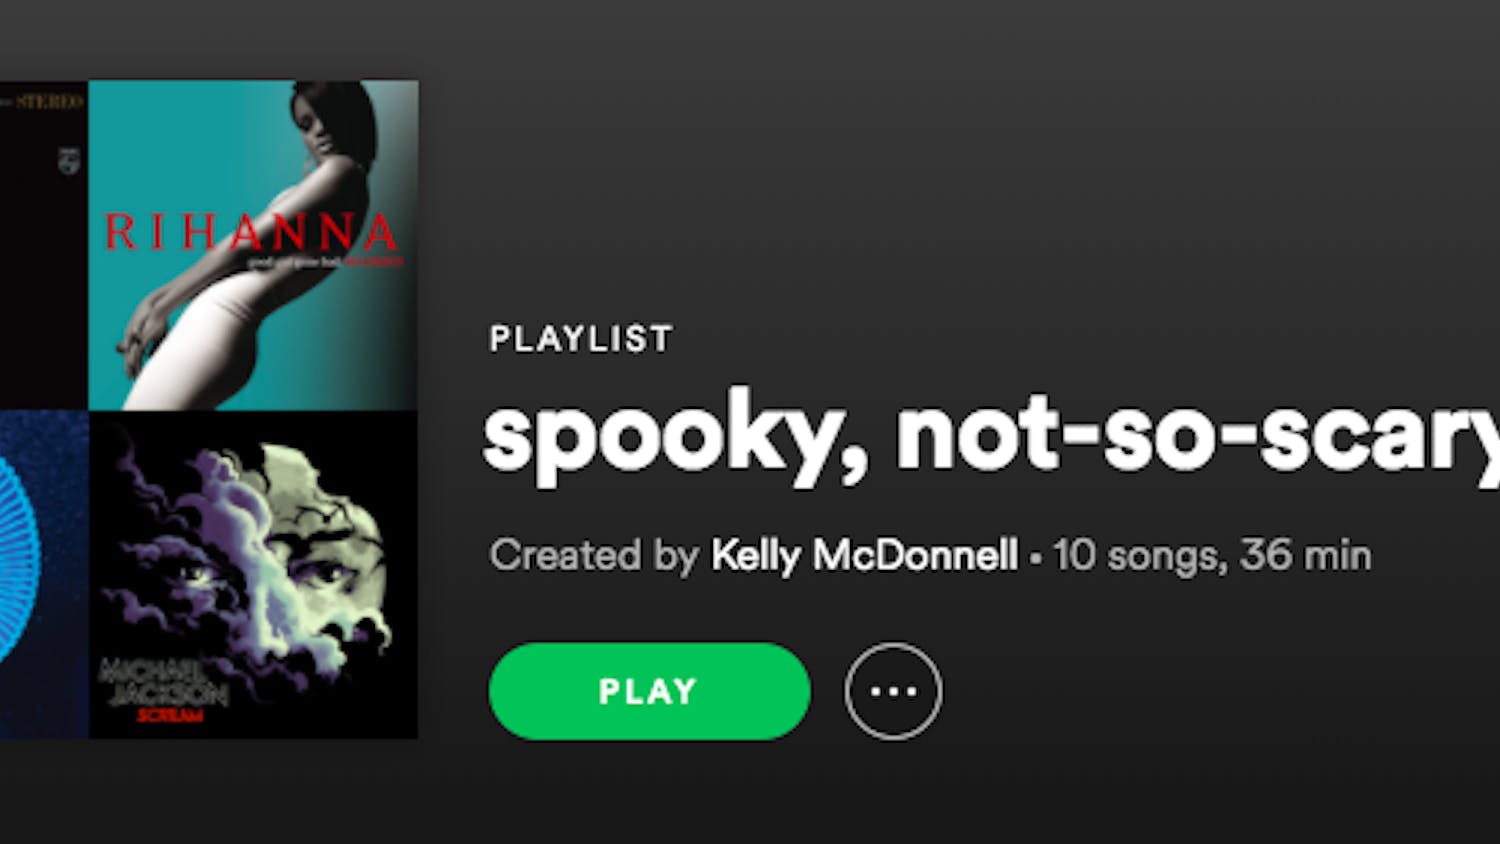 Spooky playlist